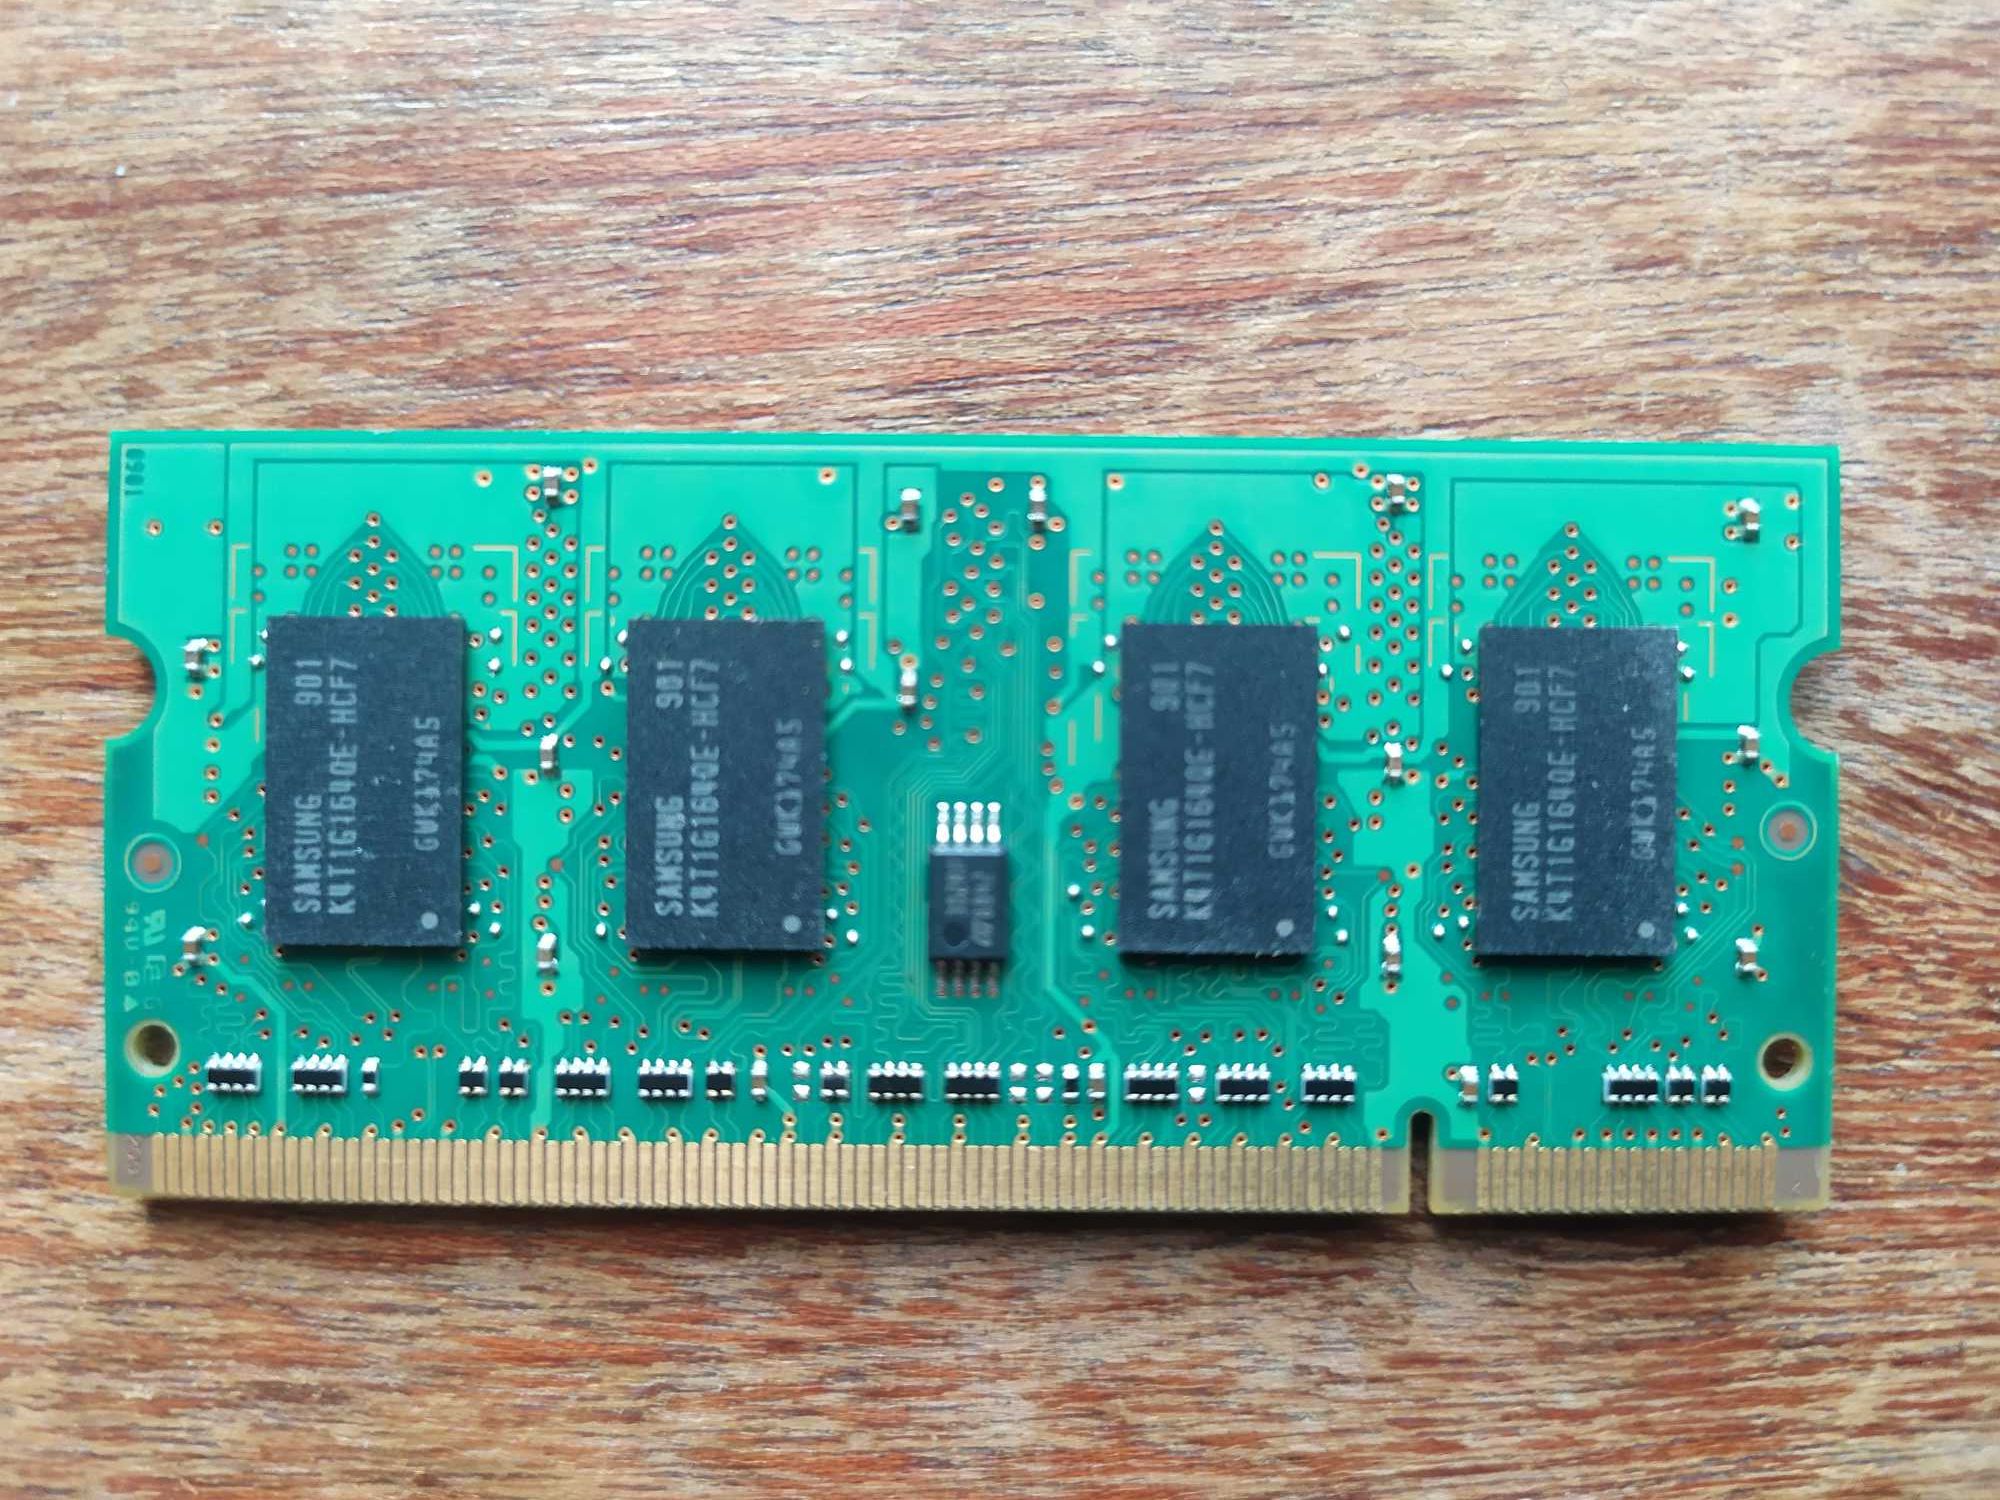 Оперативна пам'ять для ноутбука Samsung 1 GB DDR2 800 Mhz